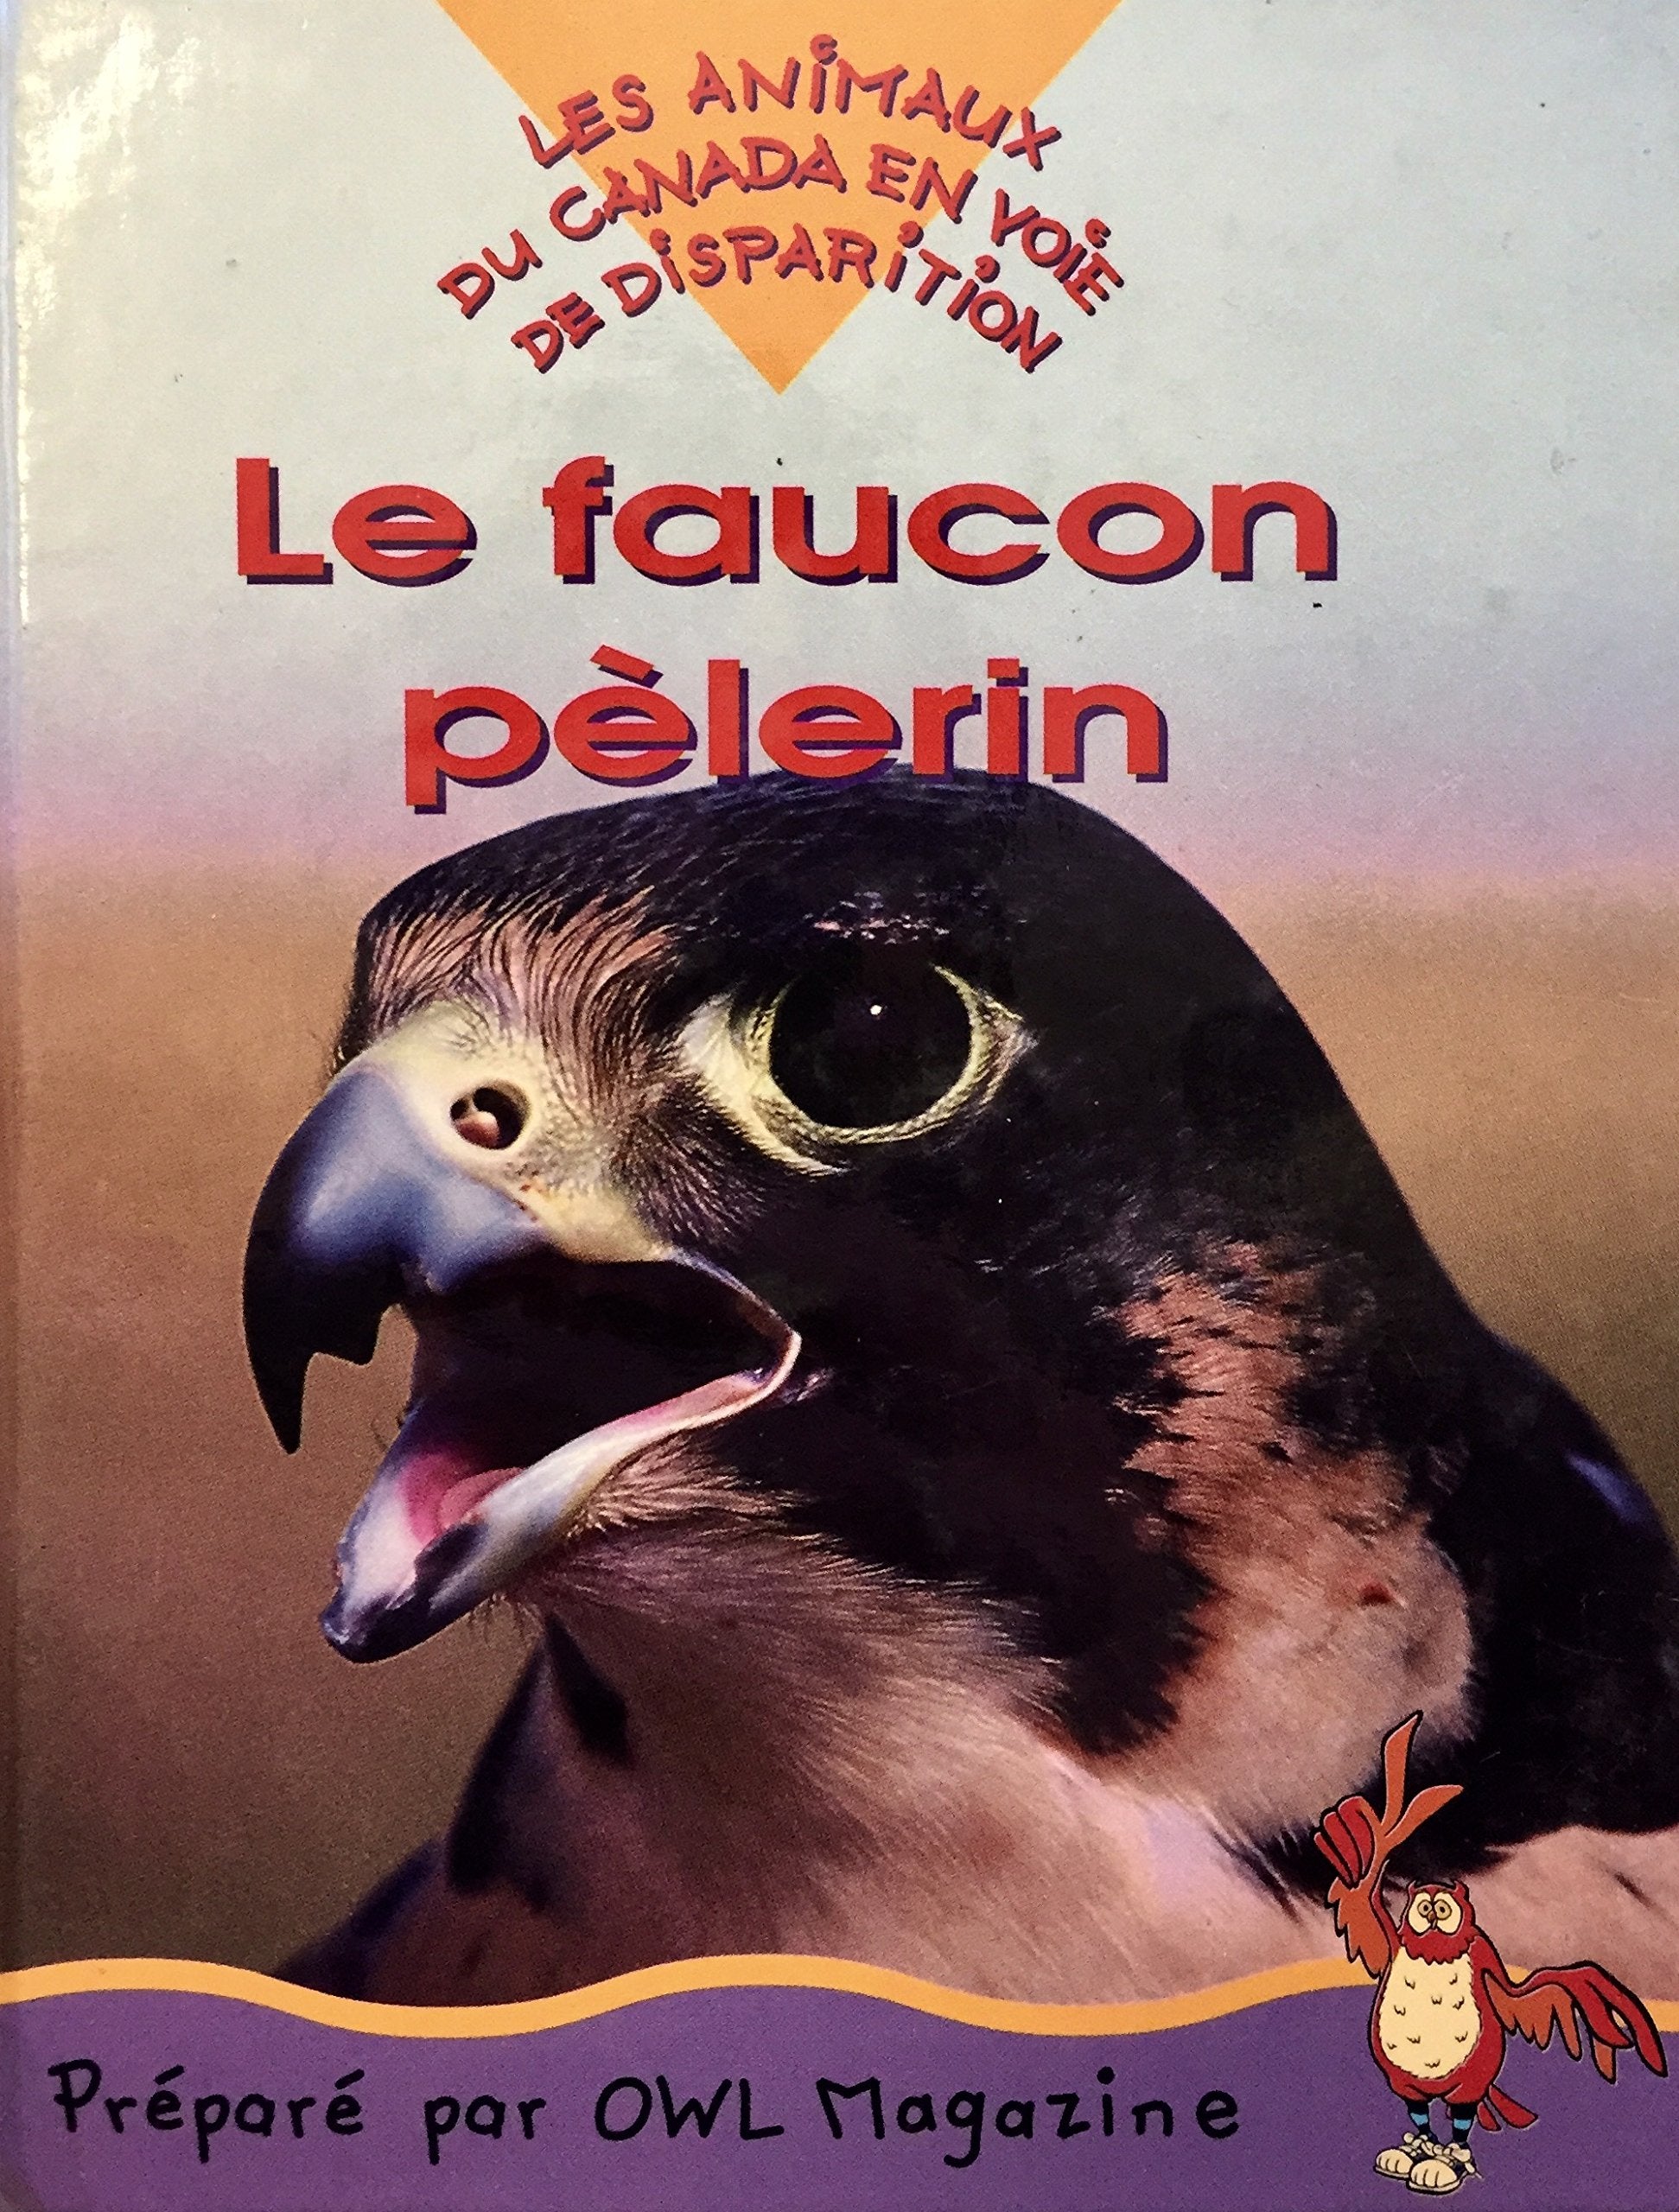 Livre ISBN 0920775969 Les animaux canadiens en voie de disparition : Le faucon pèlerin